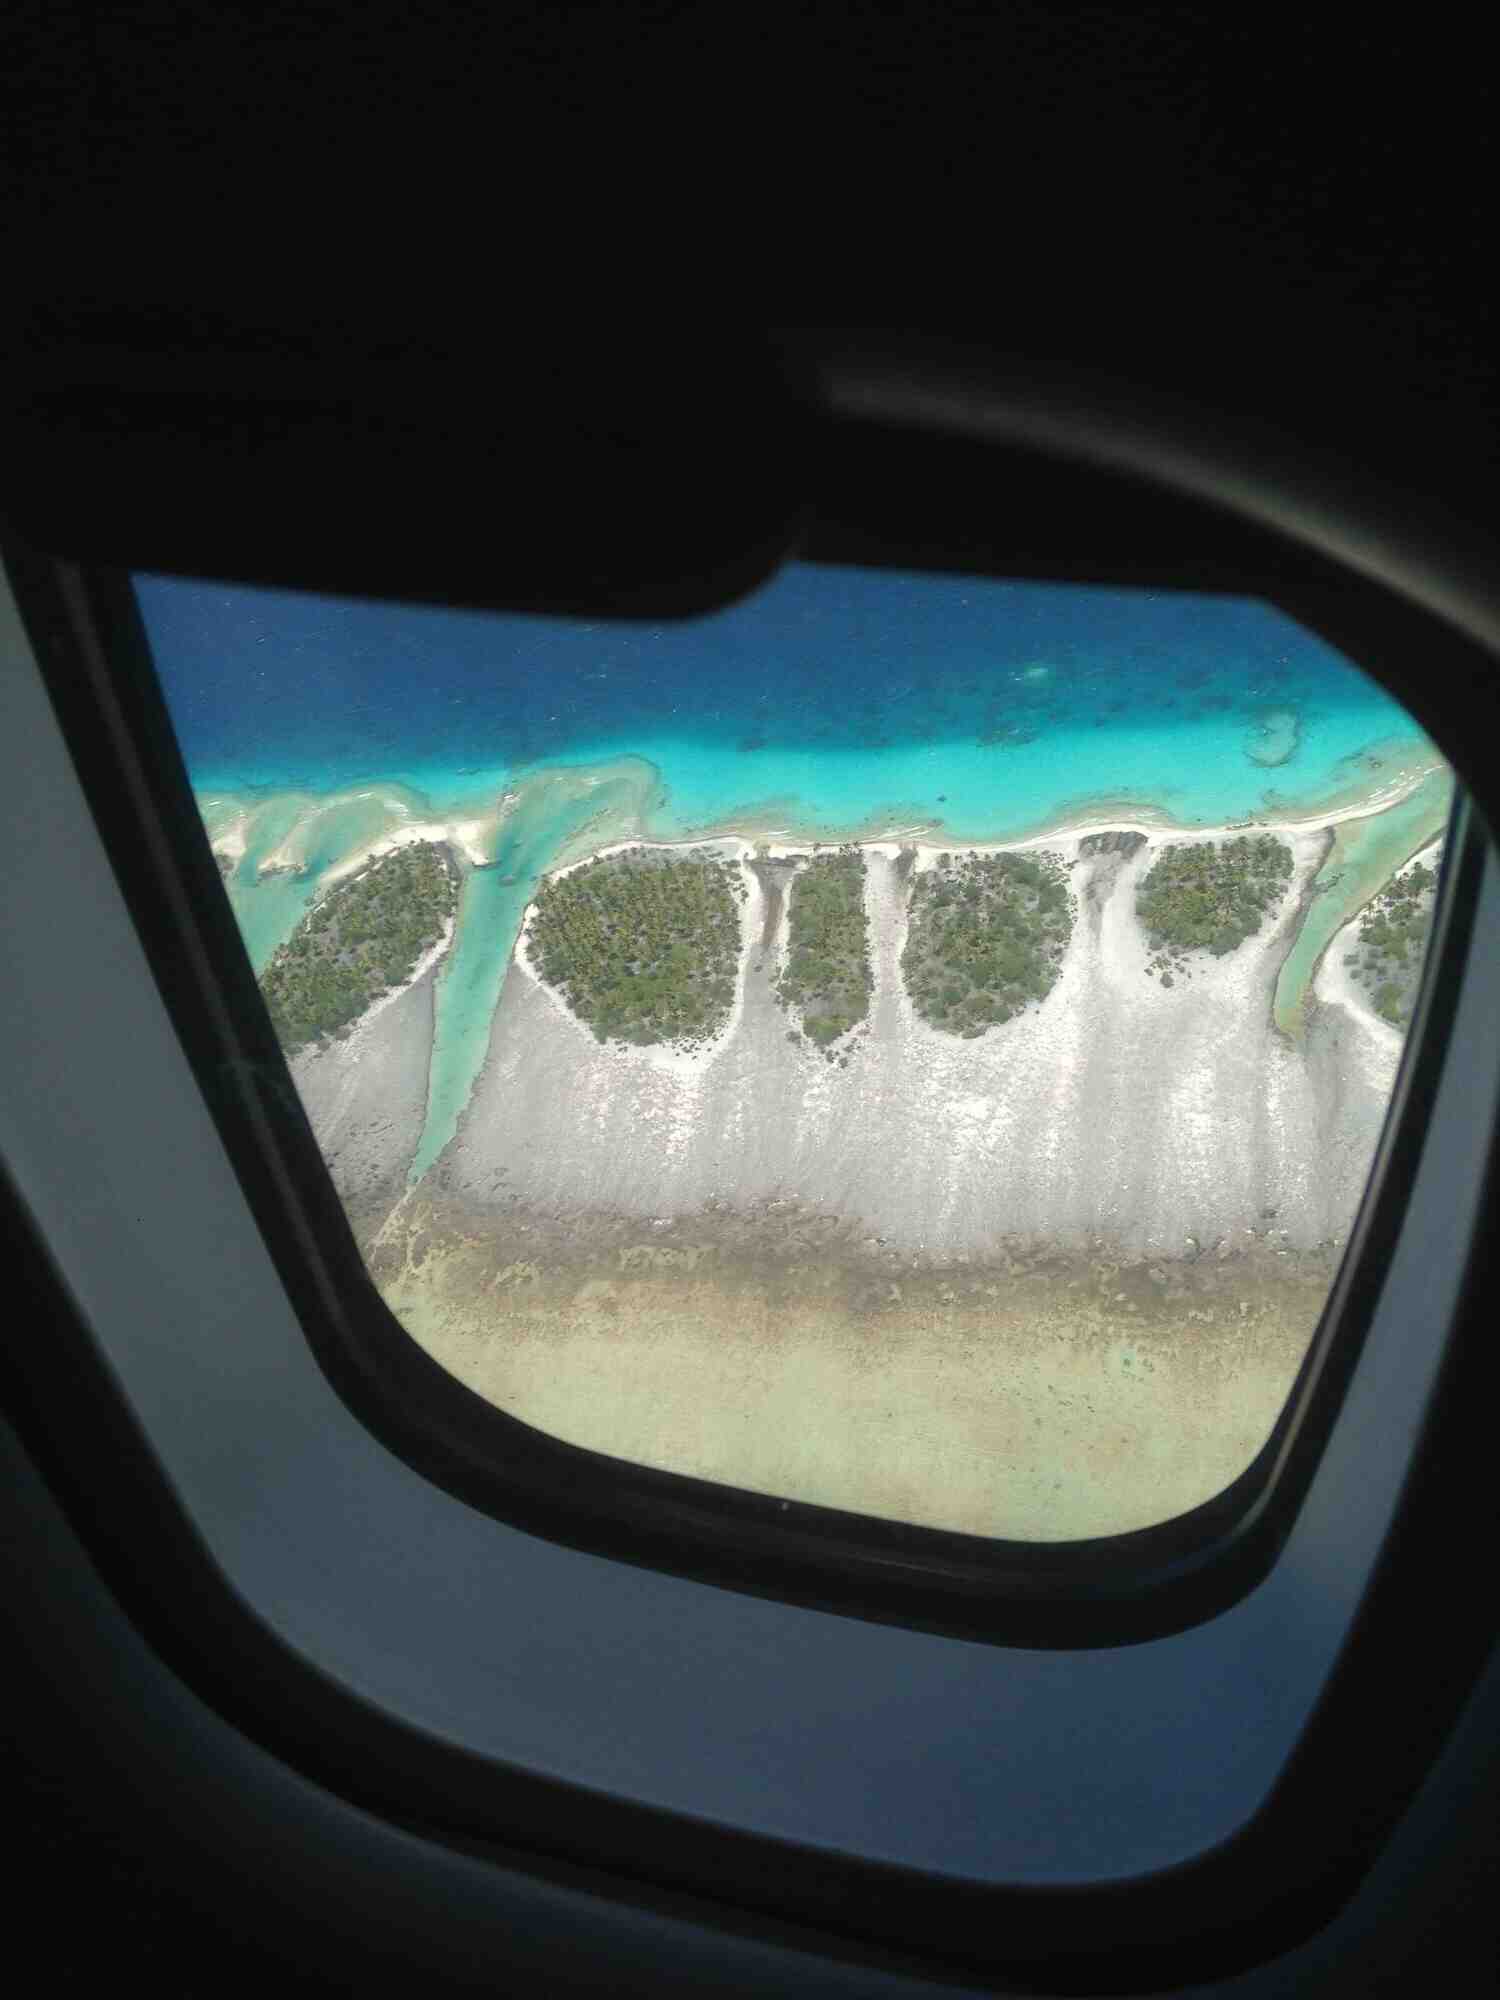 Quels sont les motifs impérieux pour voyager en Polynésie ?